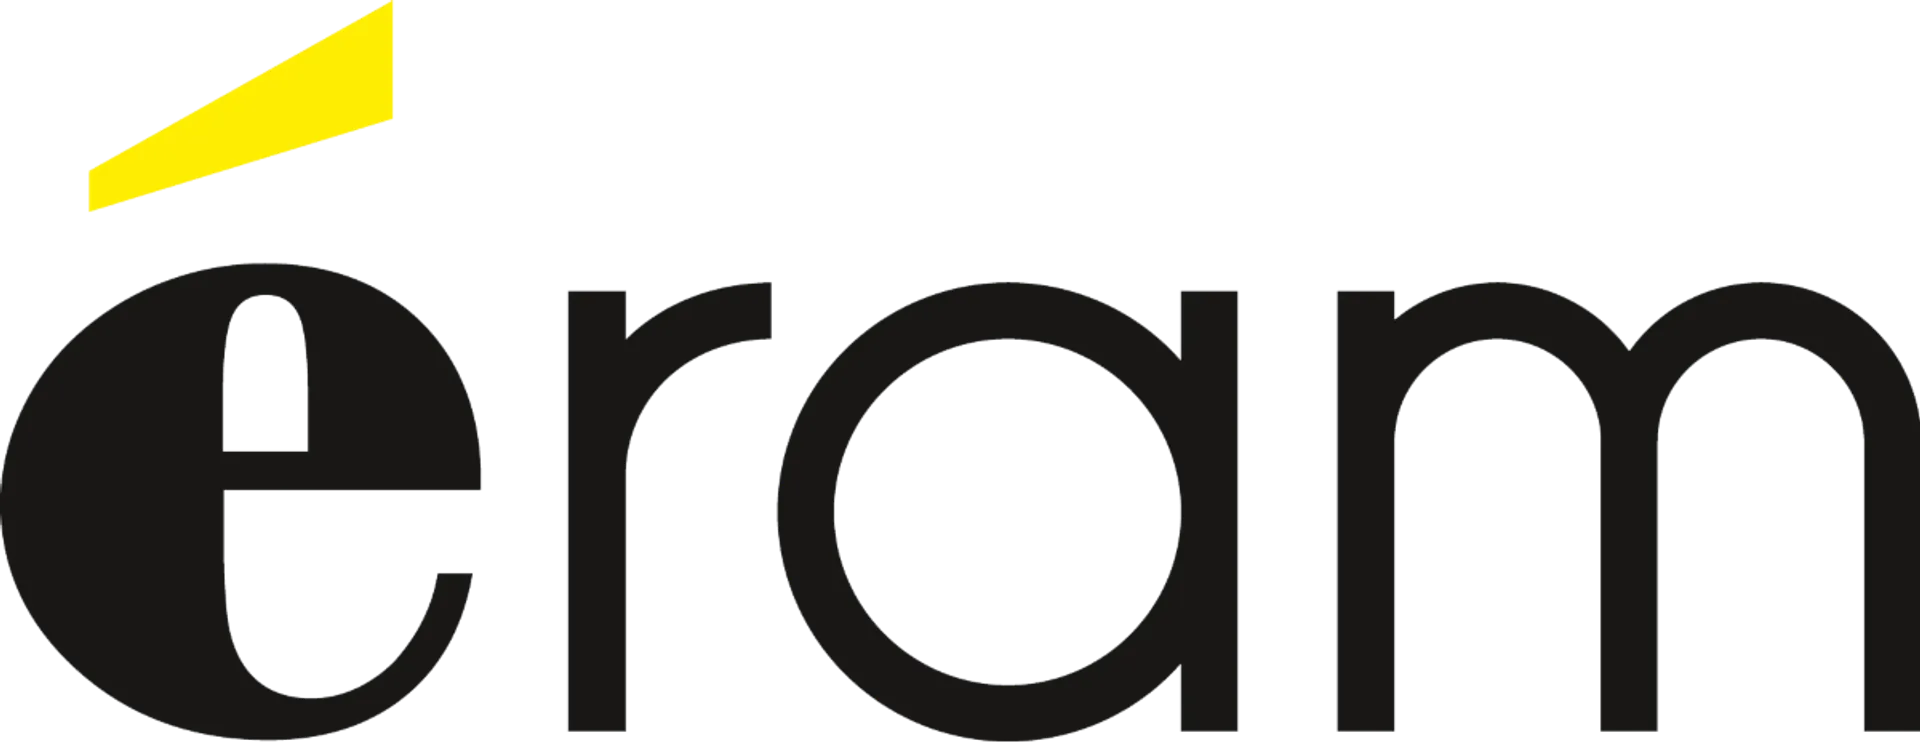 ERAM logo